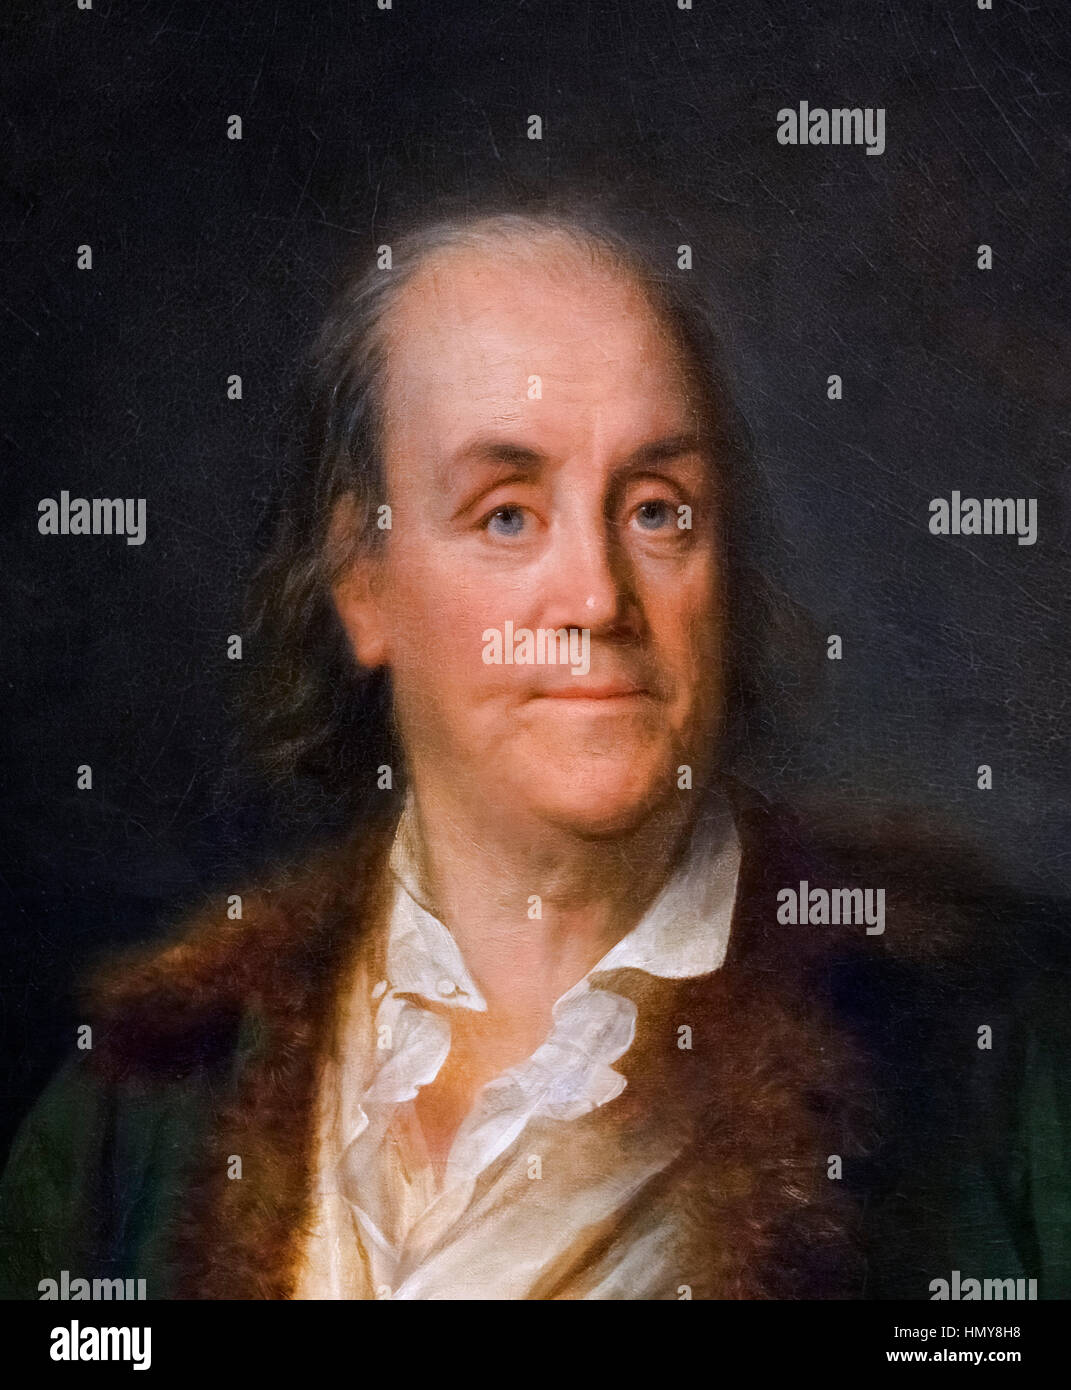 Benjamin Franklin, portrait par Anne-Rosalie Filleul Bocquet, huile sur toile, c.1778/9. Détail d'une grande peinture, HMY8HB Banque D'Images